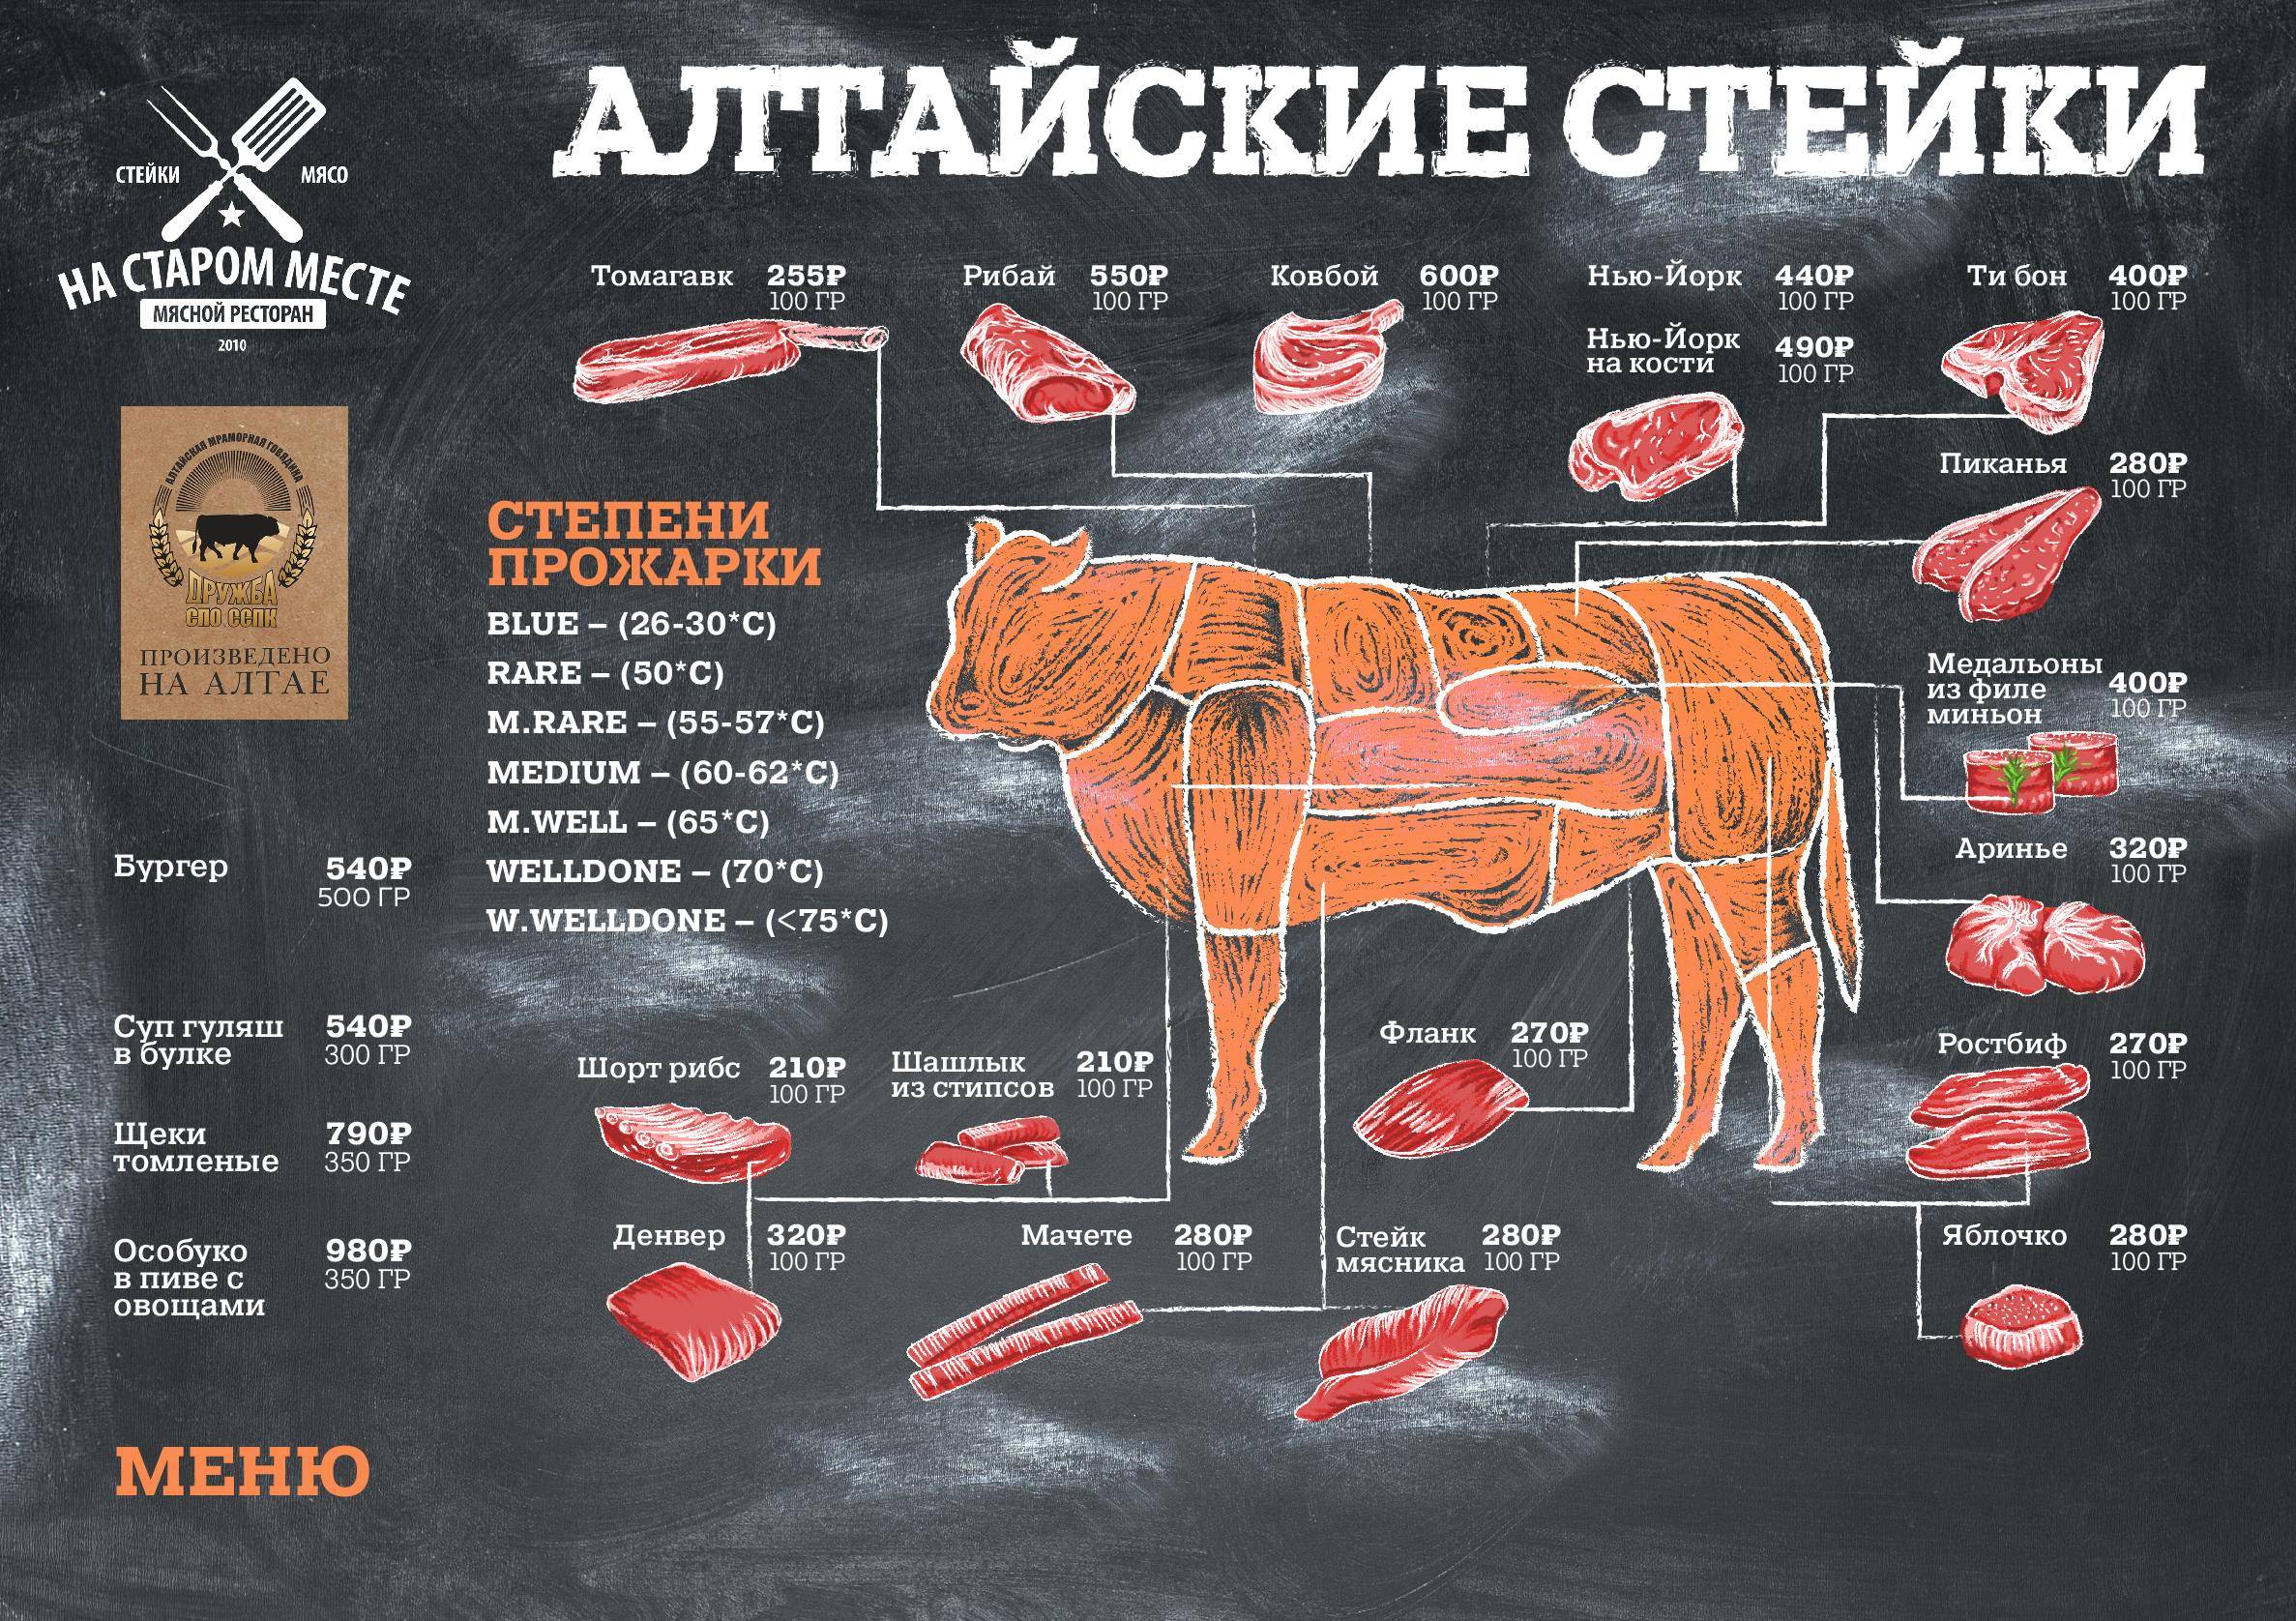 Виды стейков говядины их прожарка и как готовить